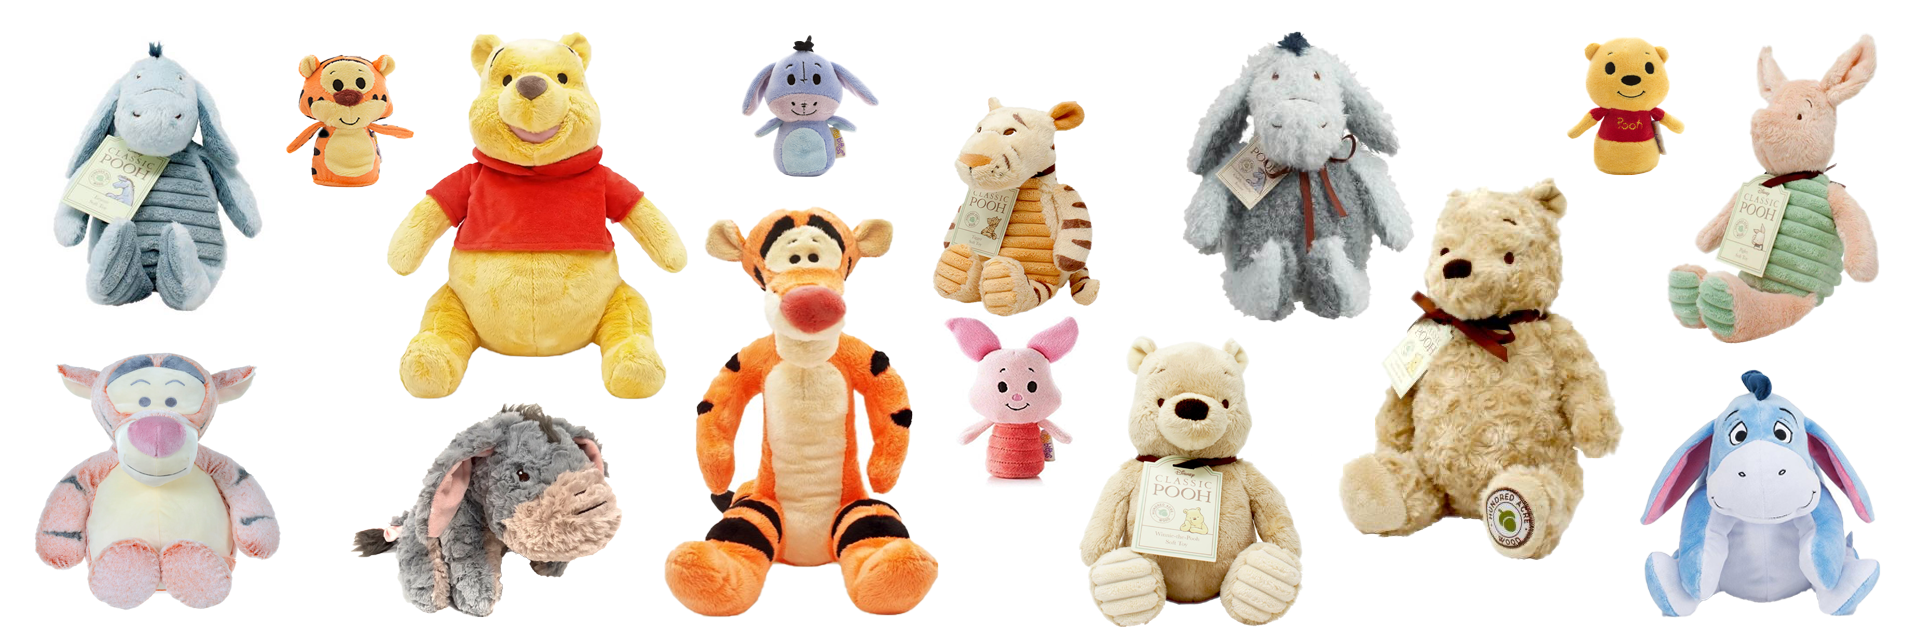 All Teddy Bears and Soft Toys